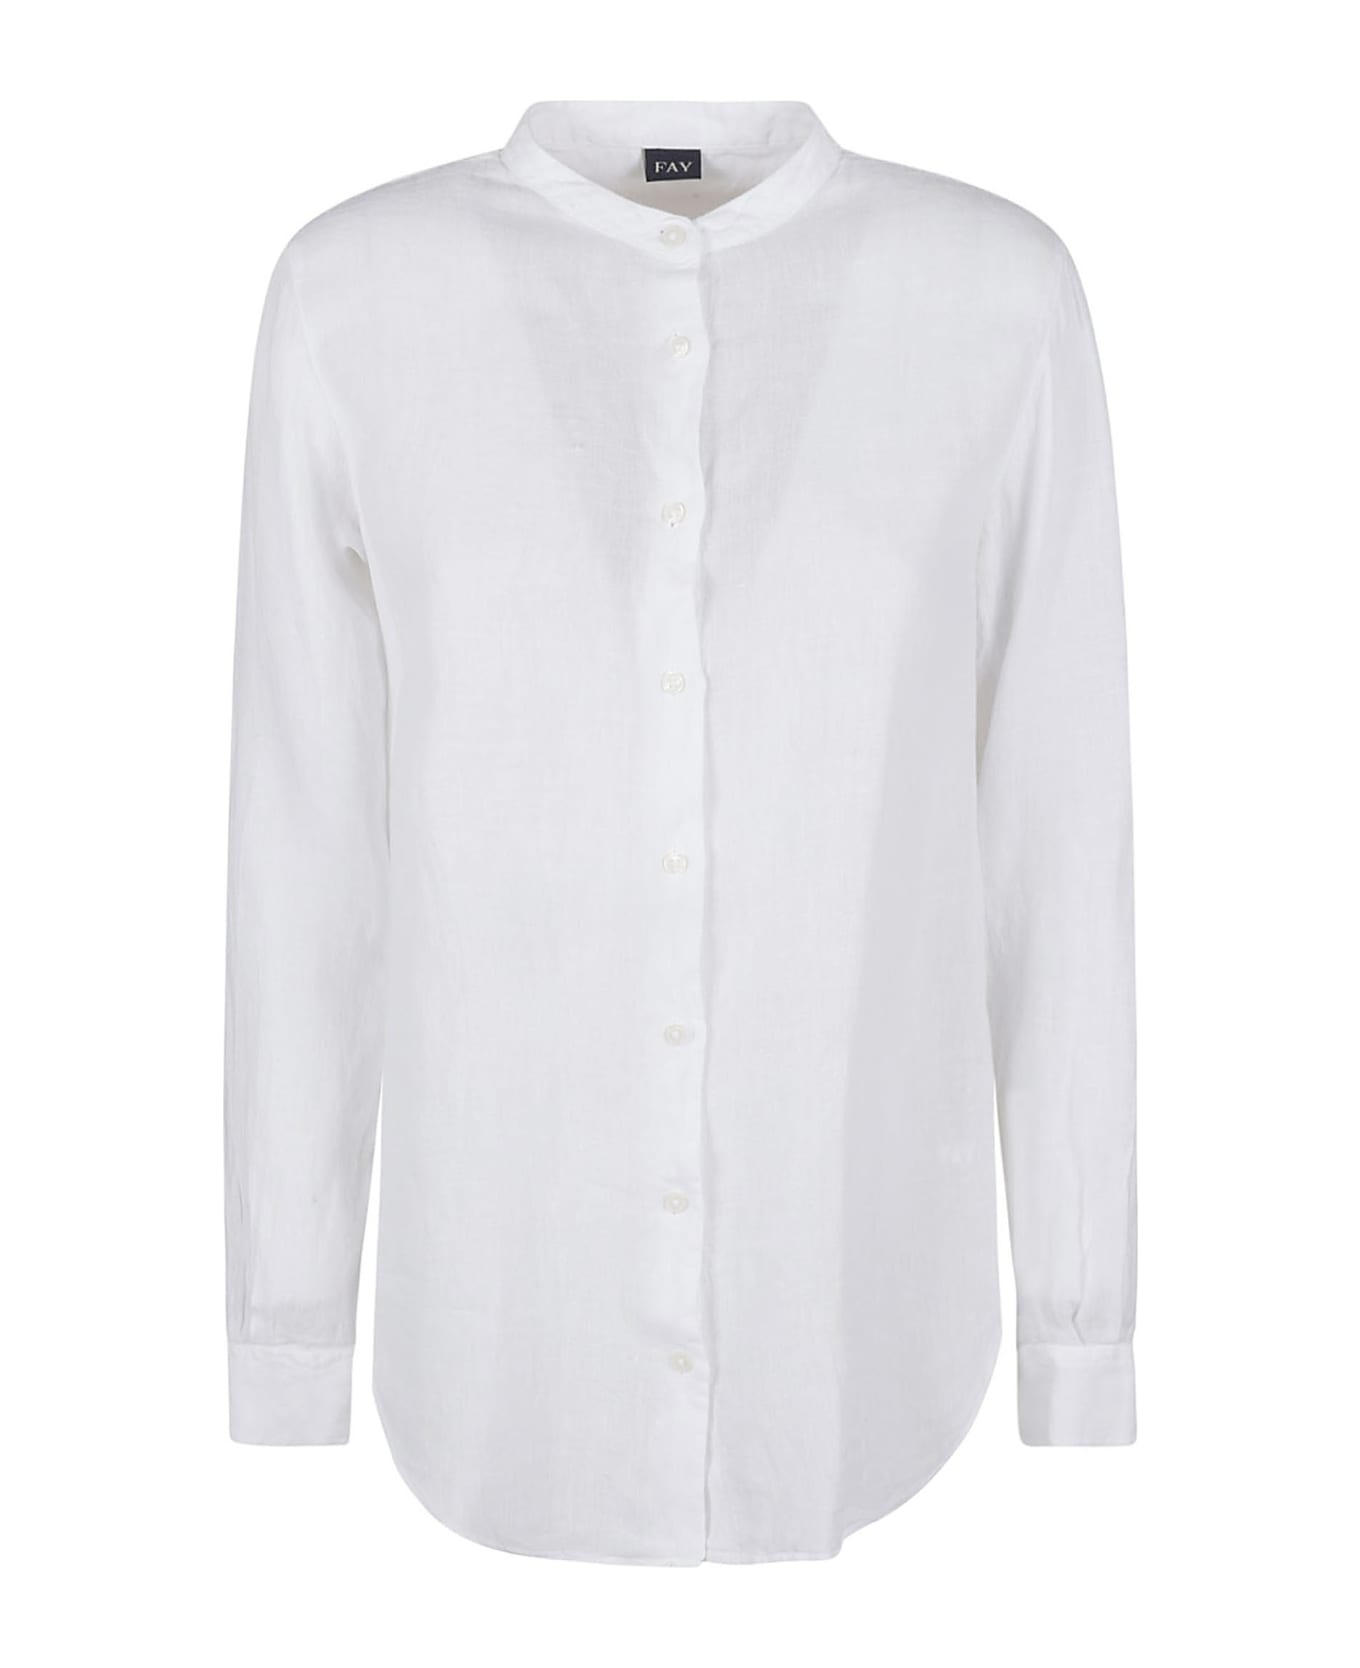 Fay Shirts White - White シャツ